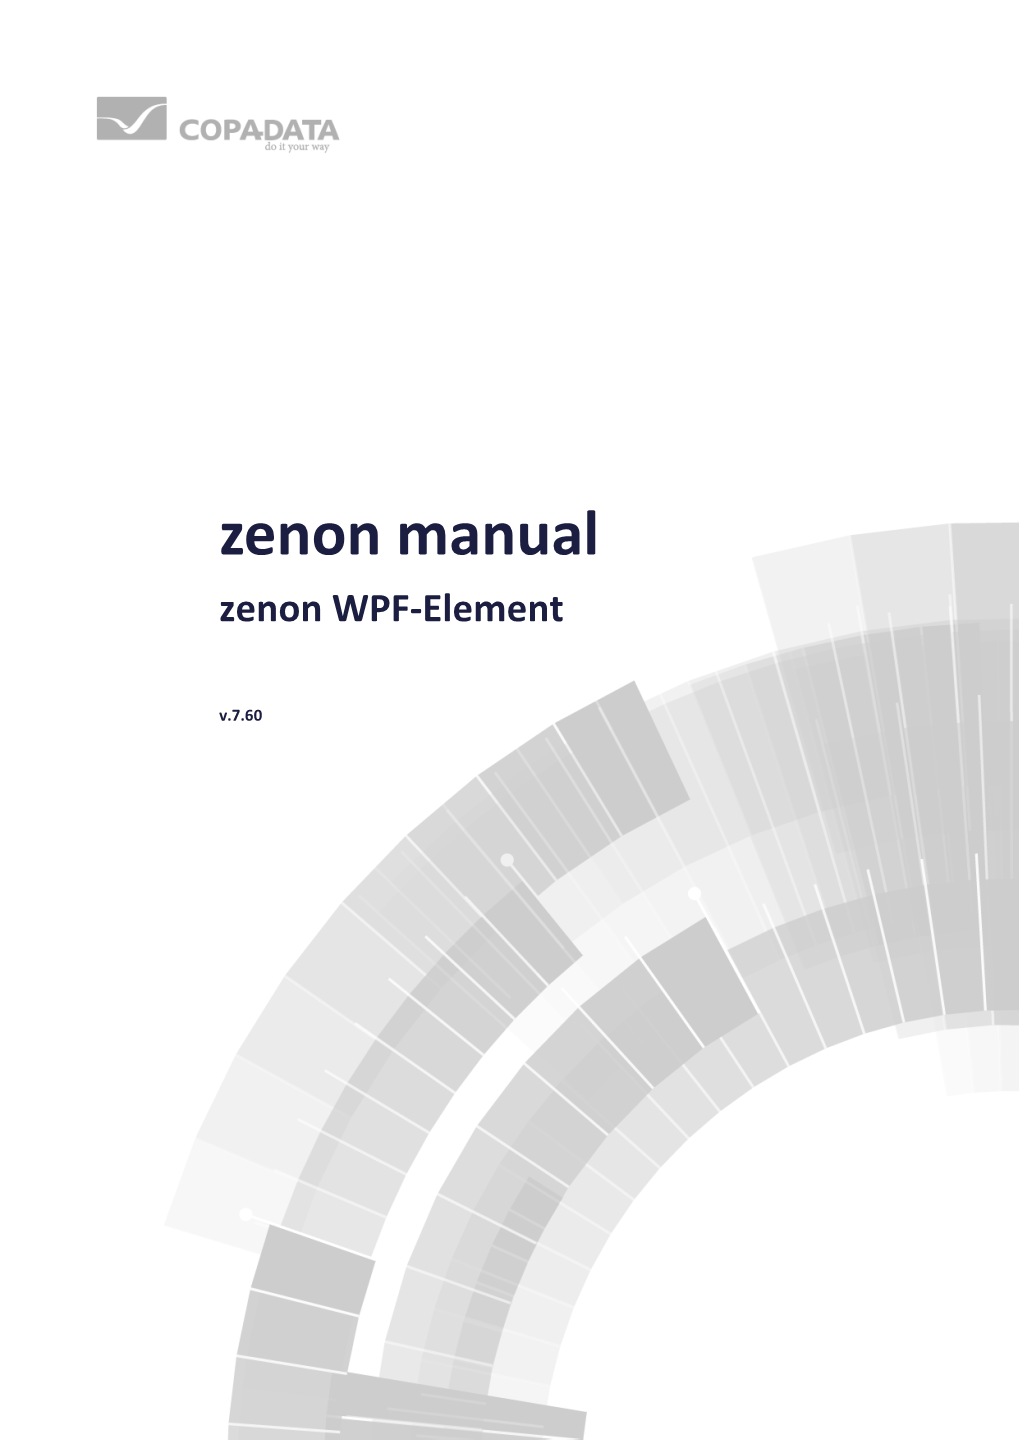 Zenon WPF-Element